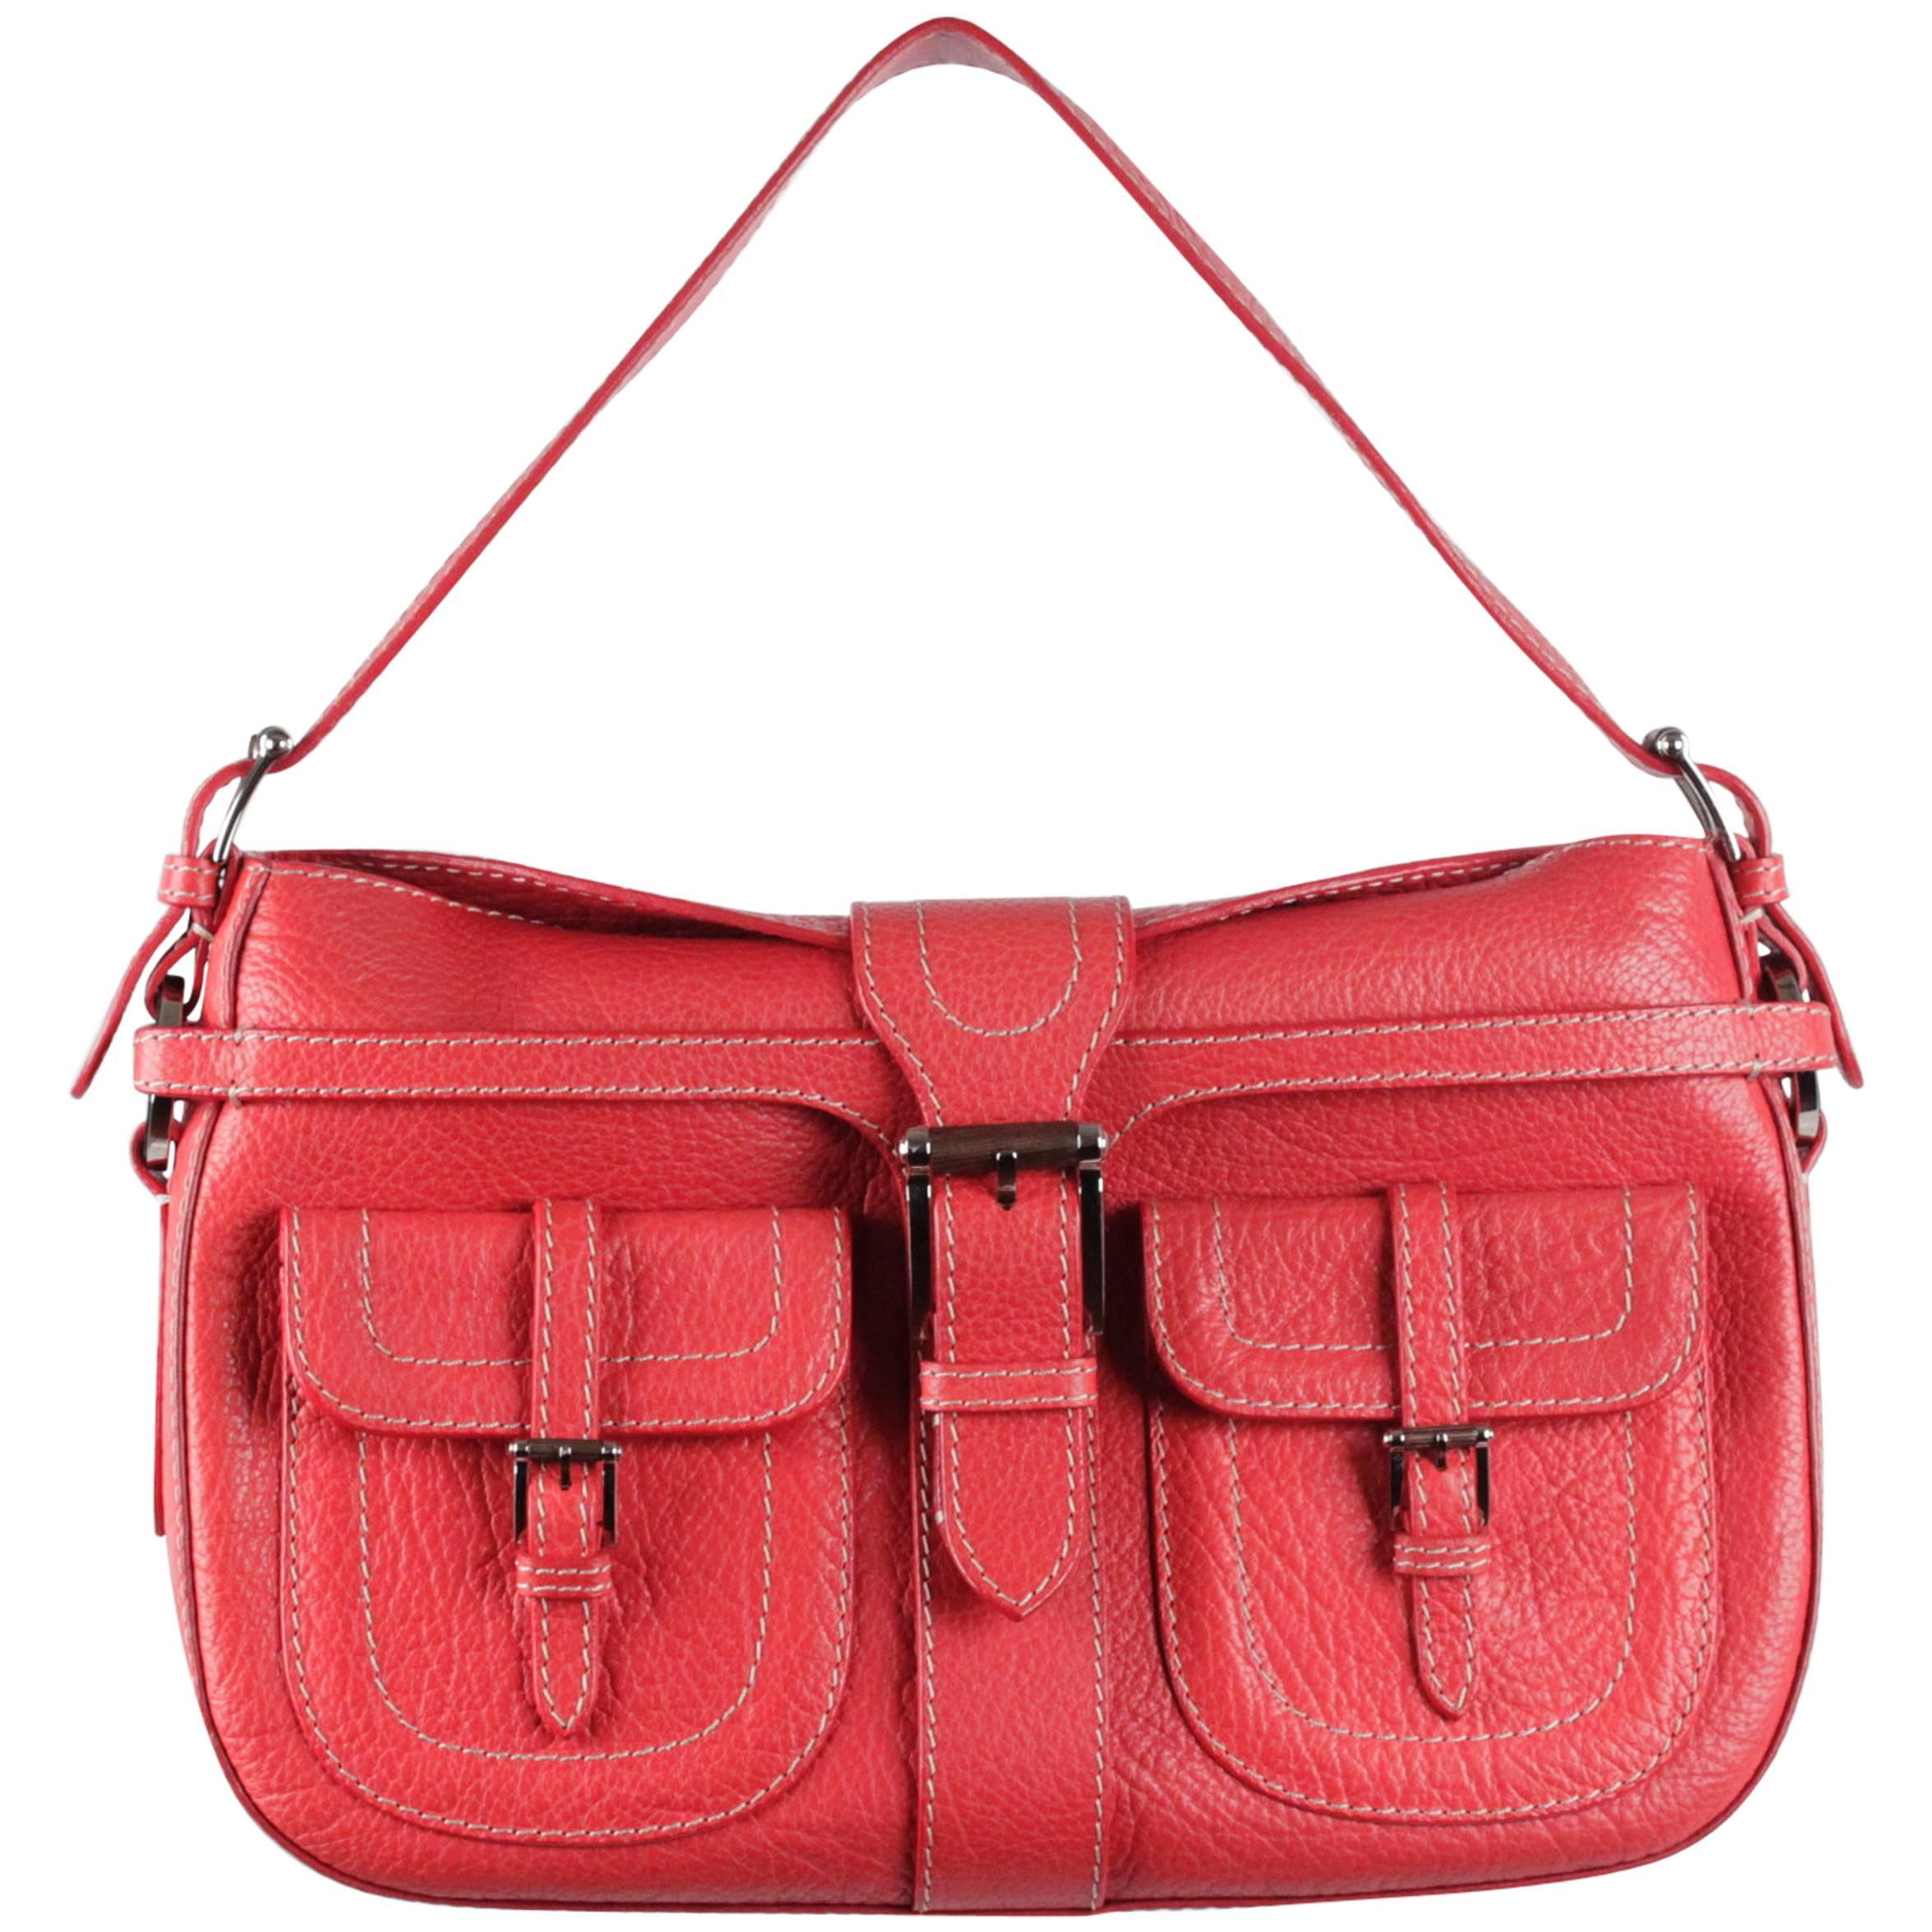 VALENTINO GARAVANI Red Leather SHOULDER BAG Handbag w/ FRONT POCKETS